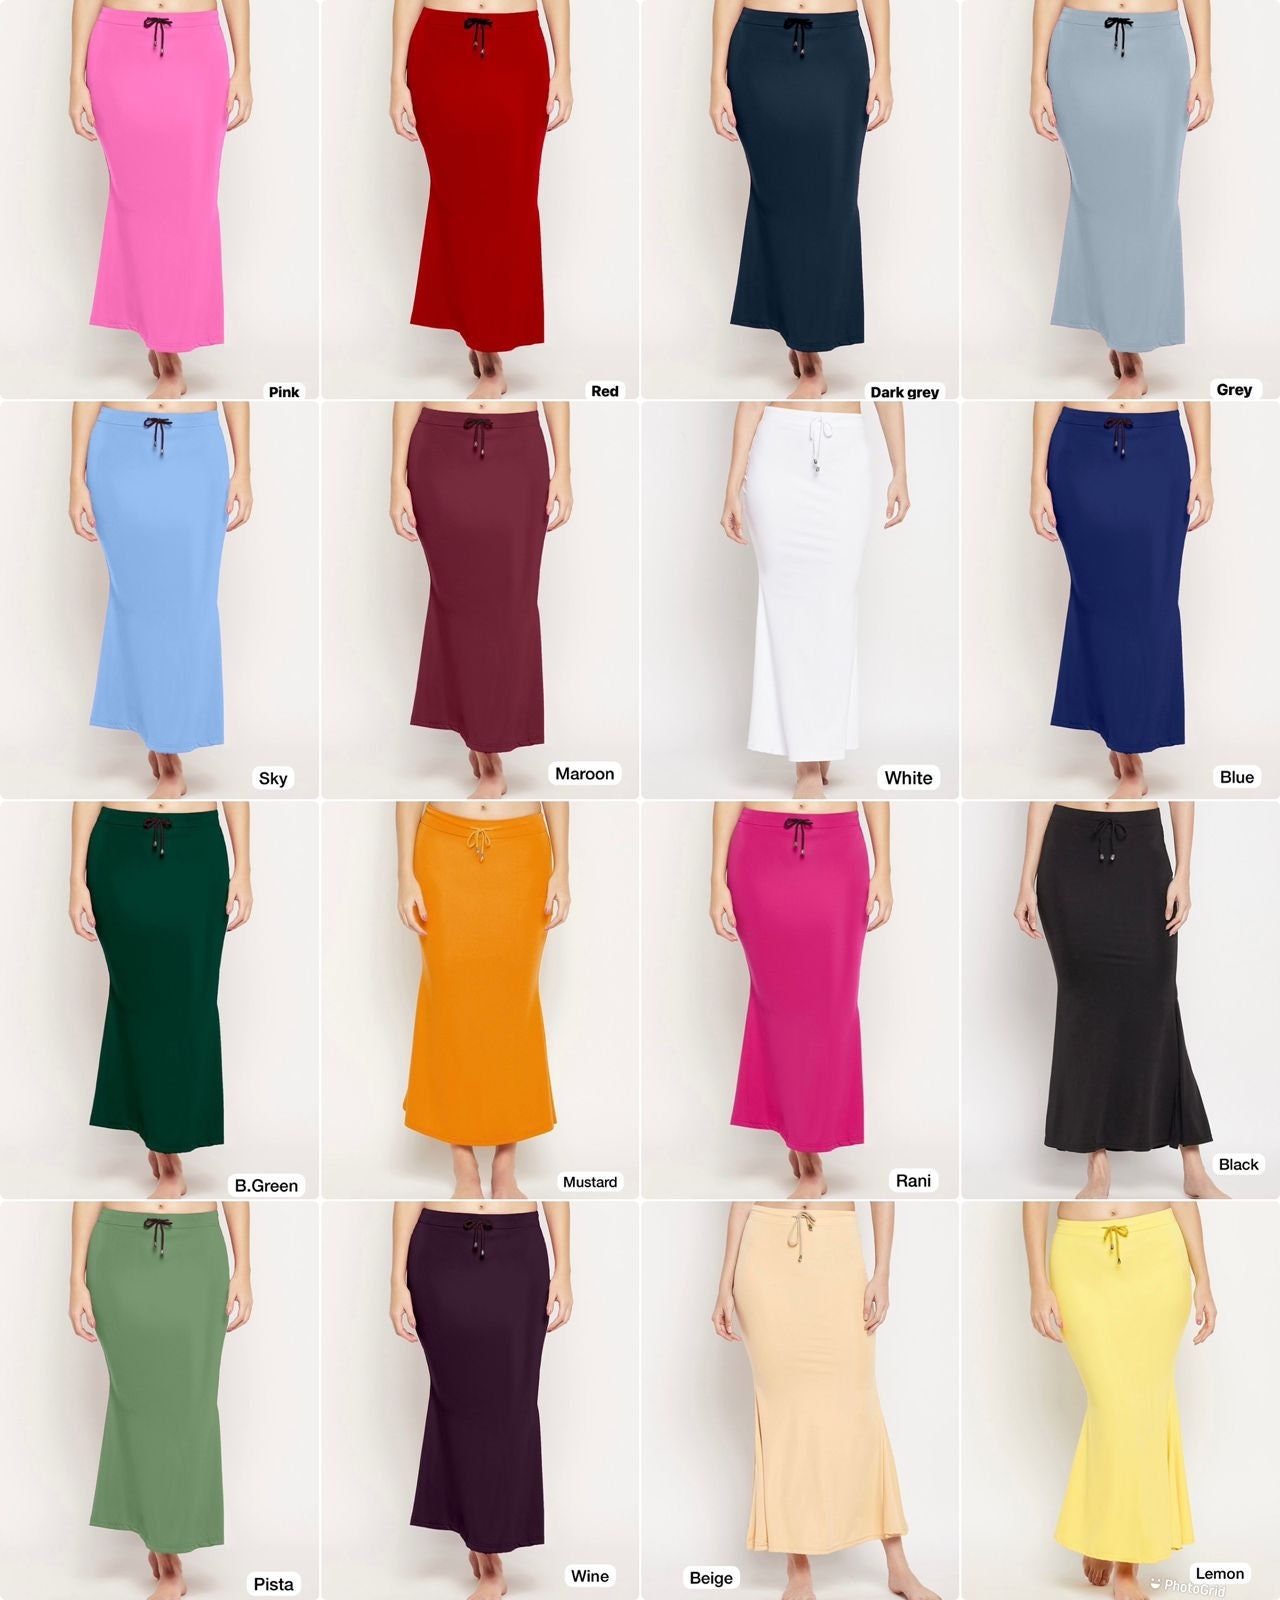 Wemyc Saree Shapewear for Medium Size( 5.1 - 5.4 ft height) Nylon